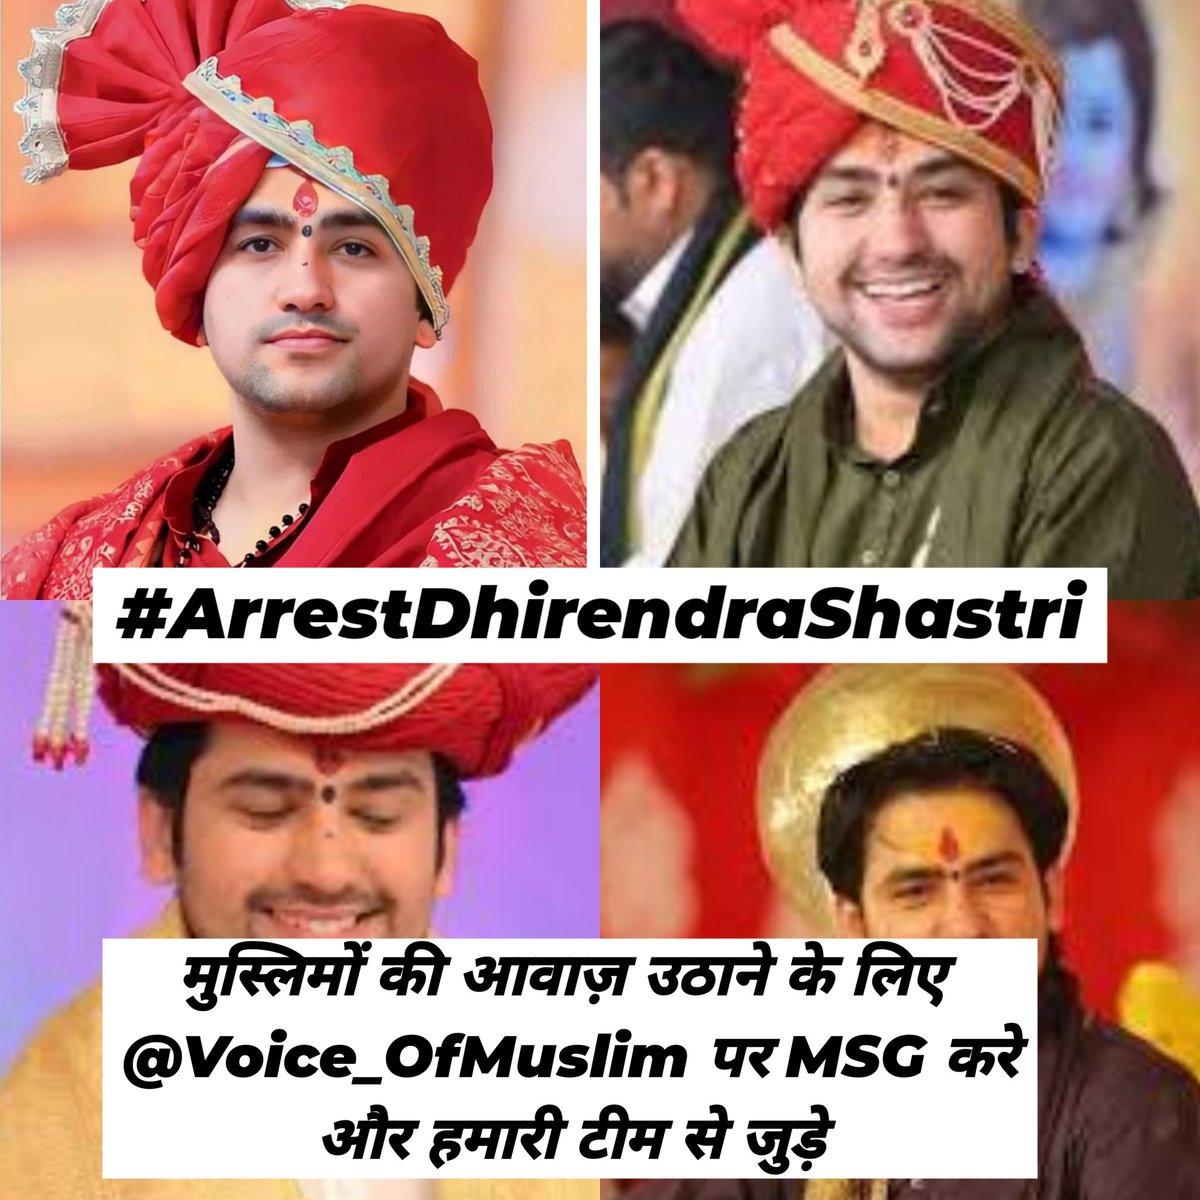 मीठे बाबा धीरेंद्र शास्त्री को गिरफ्तार करो सब लिखो एक साथ #ArrestDhirendraShastri